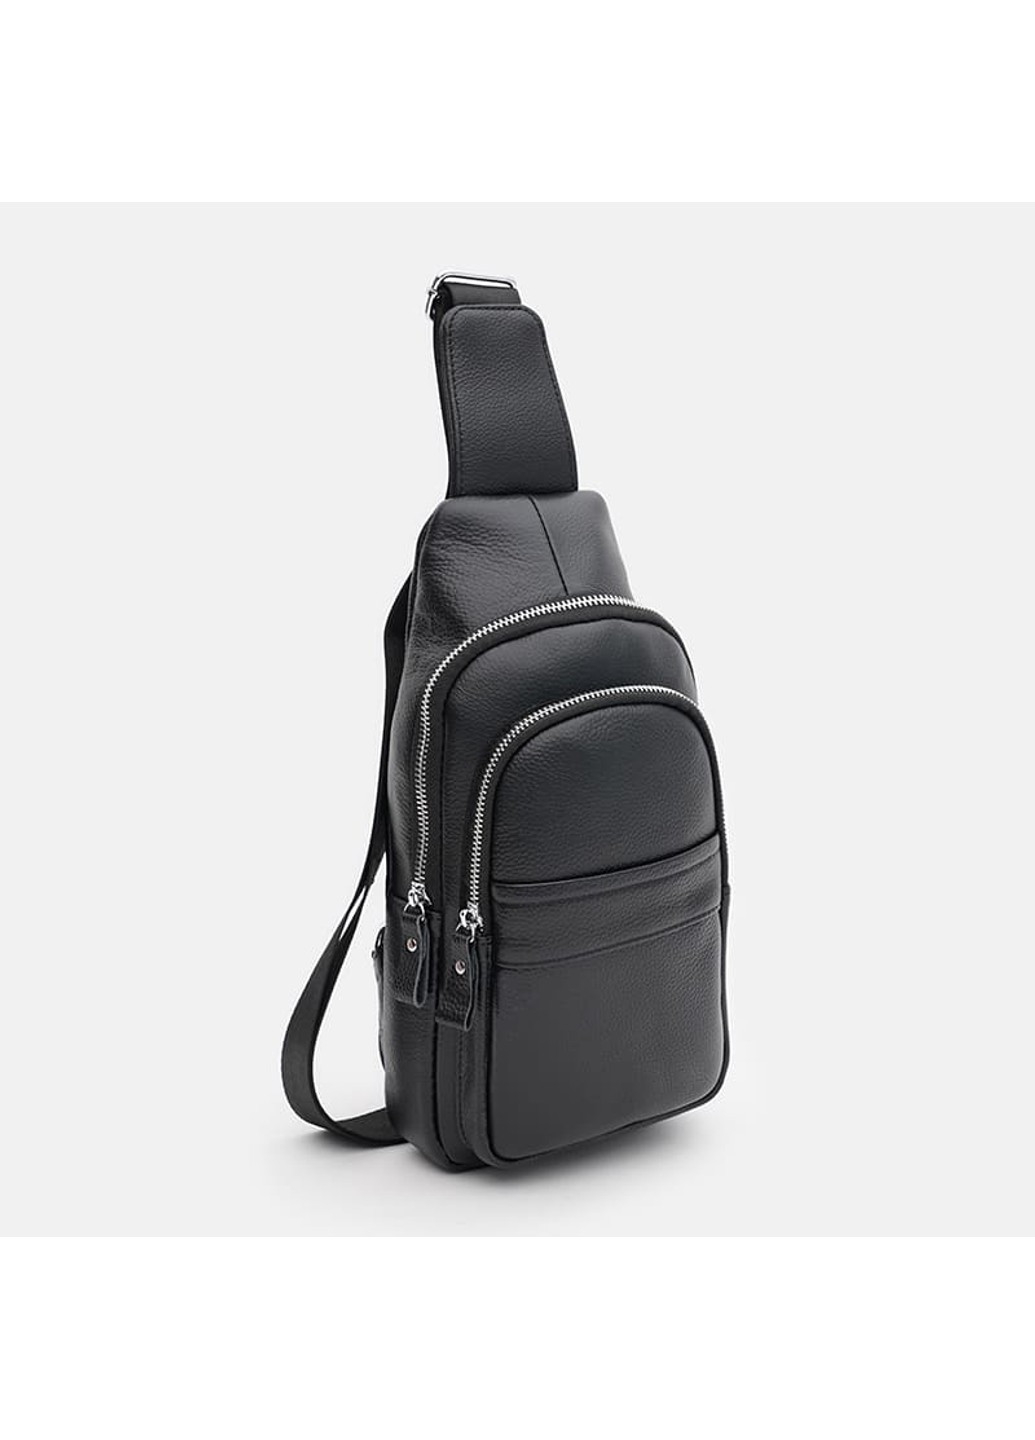 Мужской кожаный рюкзак через плечо K16602bl-black Keizer (266143552)